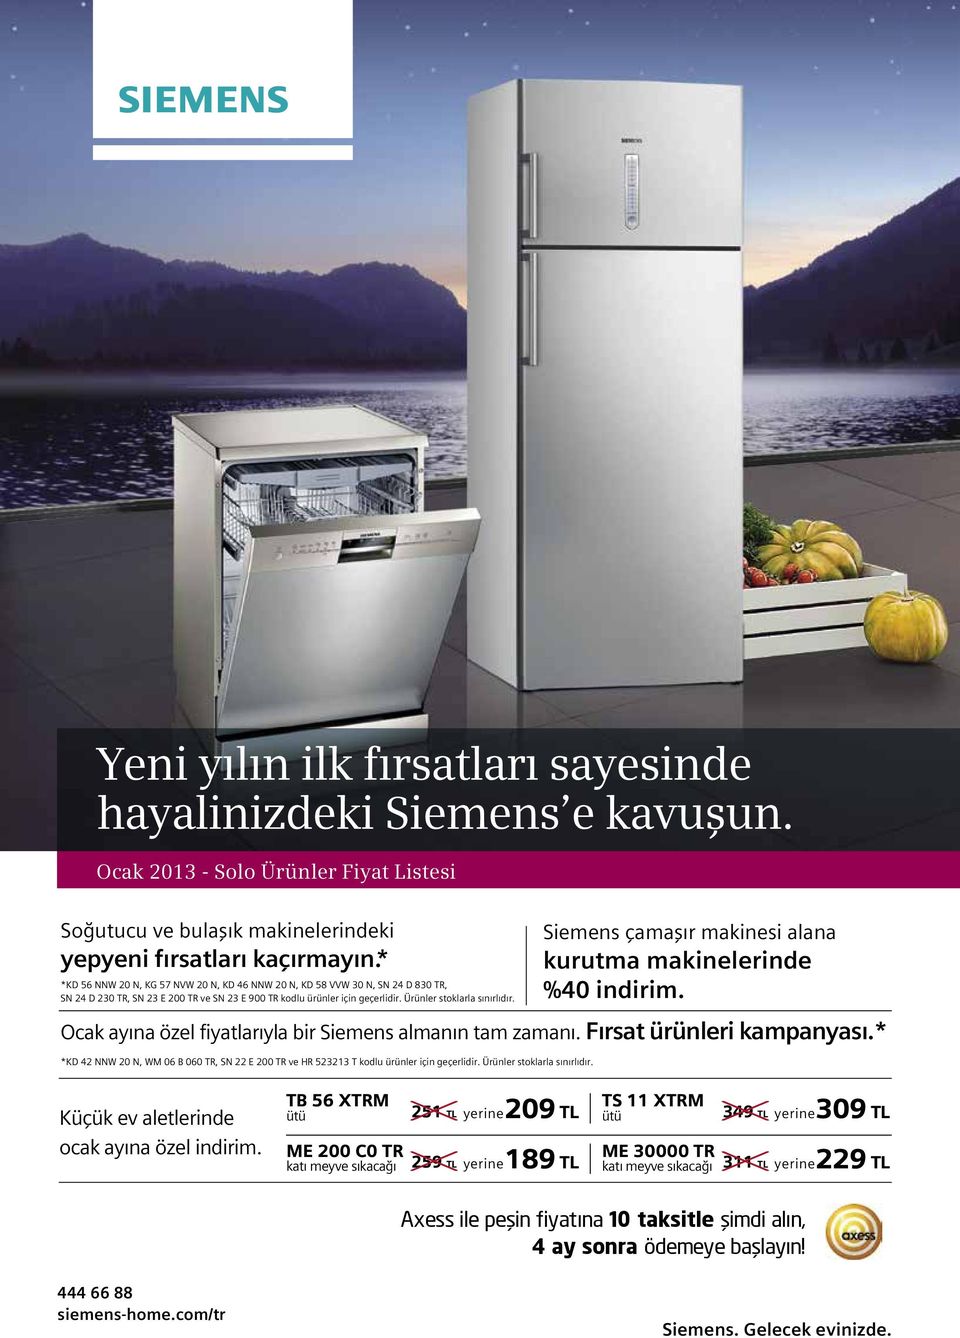 Siemens çamaşır makinesi alana kurutma makinelerinde %40 indirim. Ocak ayına özel fiyatlarıyla bir Siemens almanın tam zamanı. Fırsat ürünleri kampanyası.